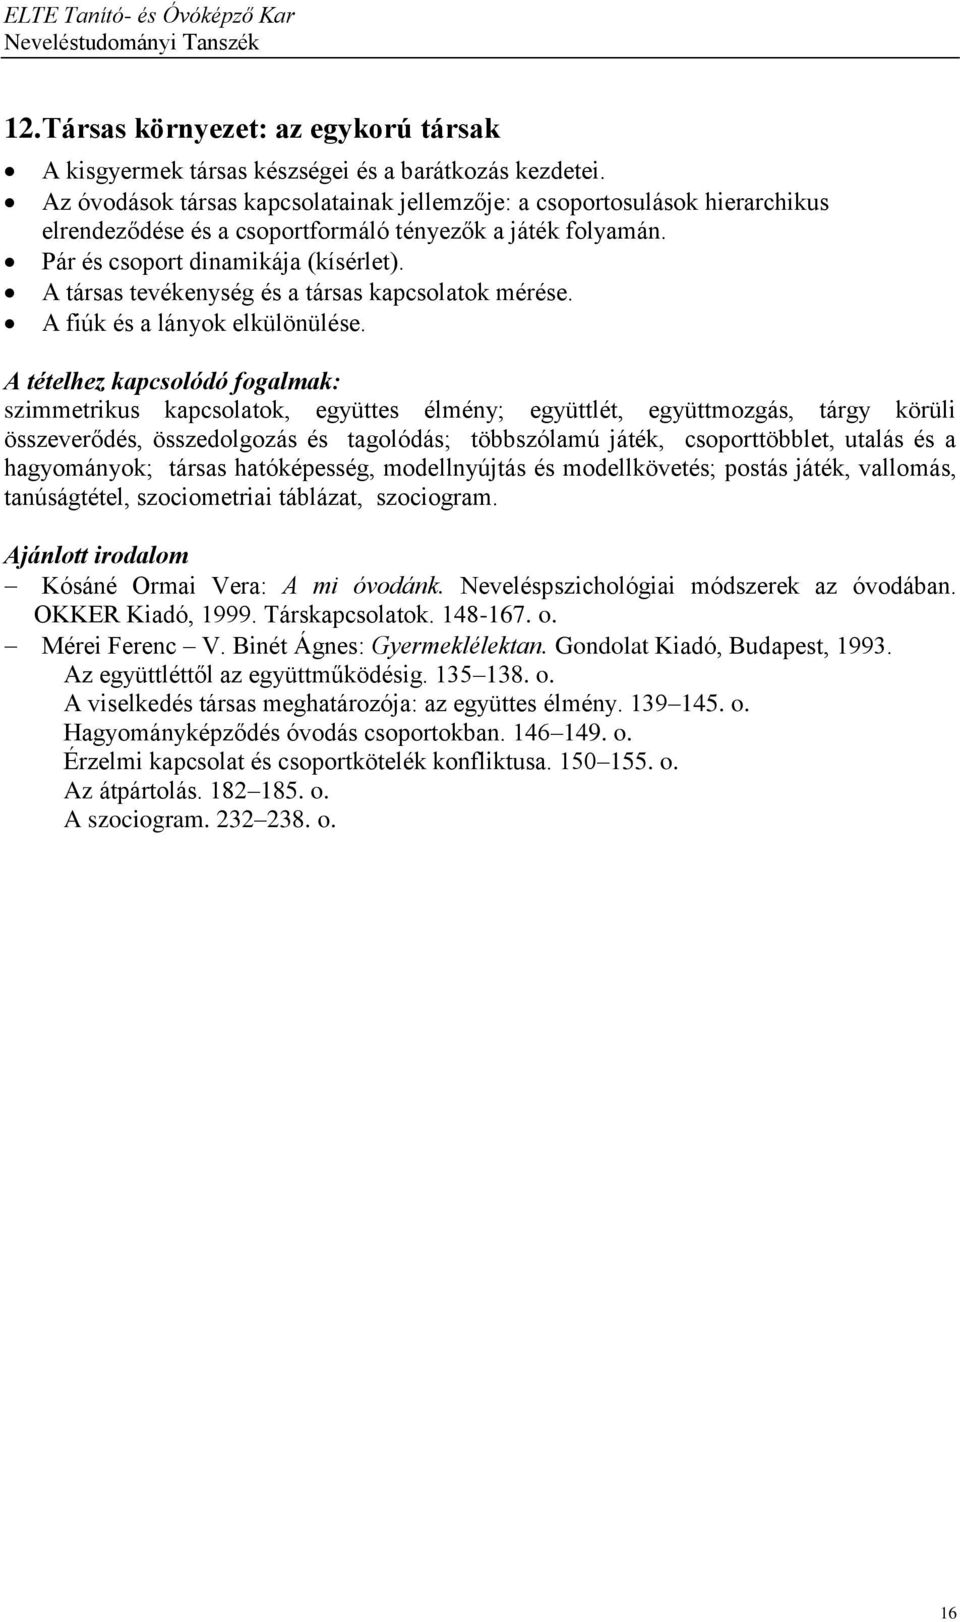 PSZICHOLÓGIA SZIGORLAT (információk, tételsor, szakirodalom) - PDF Free  Download